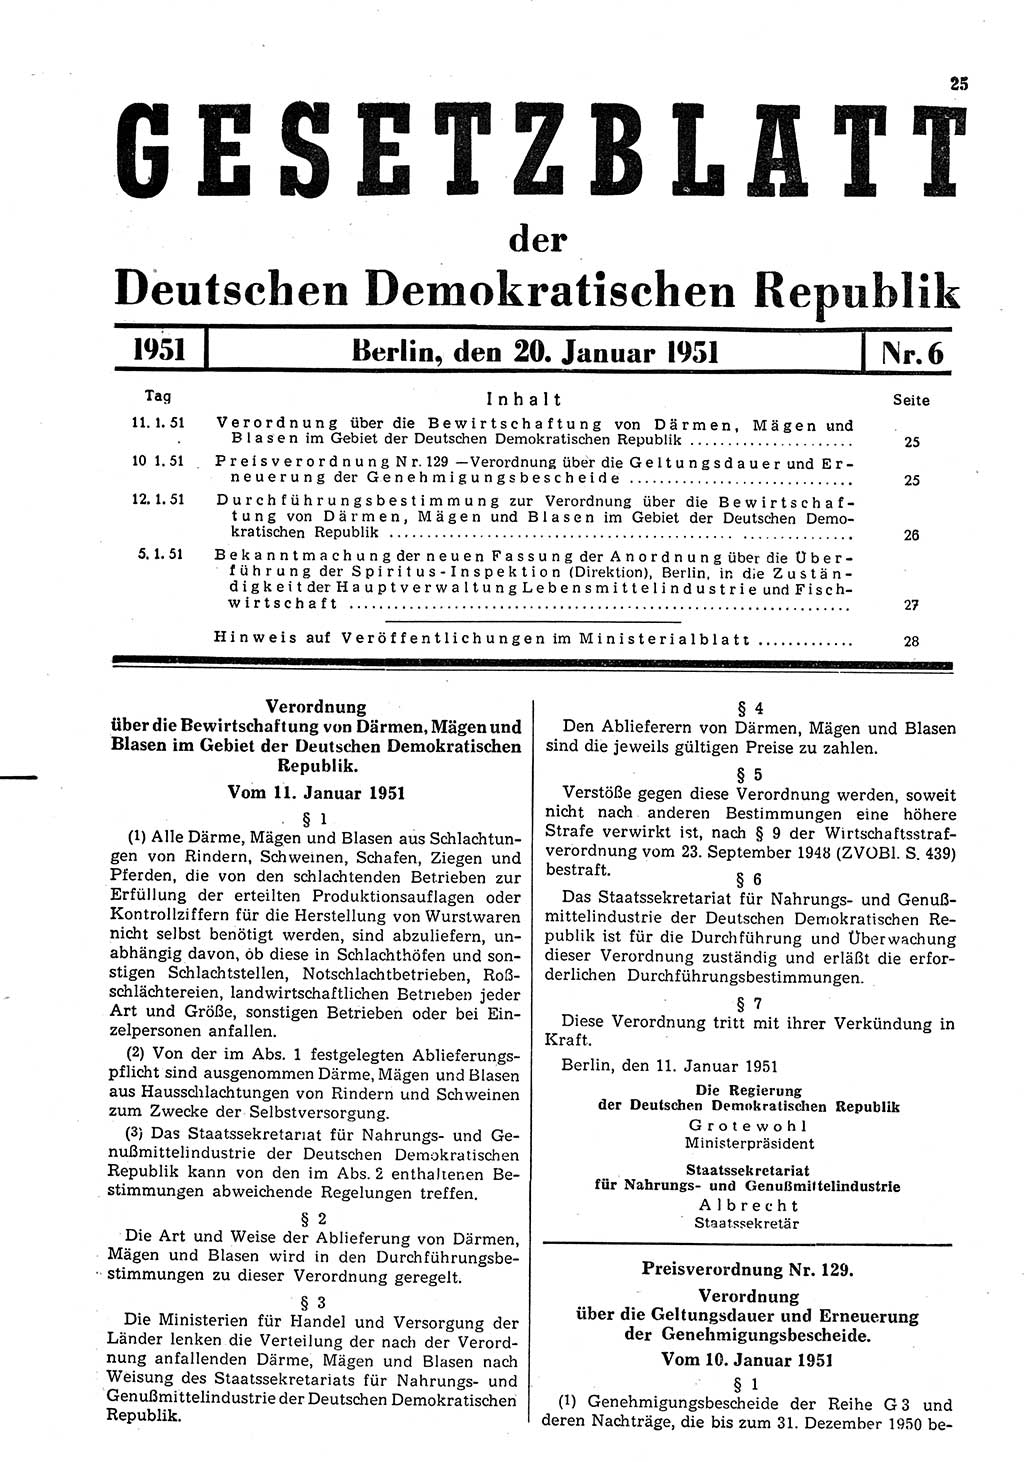 Gesetzblatt (GBl.) der Deutschen Demokratischen Republik (DDR) 1951, Seite 25 (GBl. DDR 1951, S. 25)